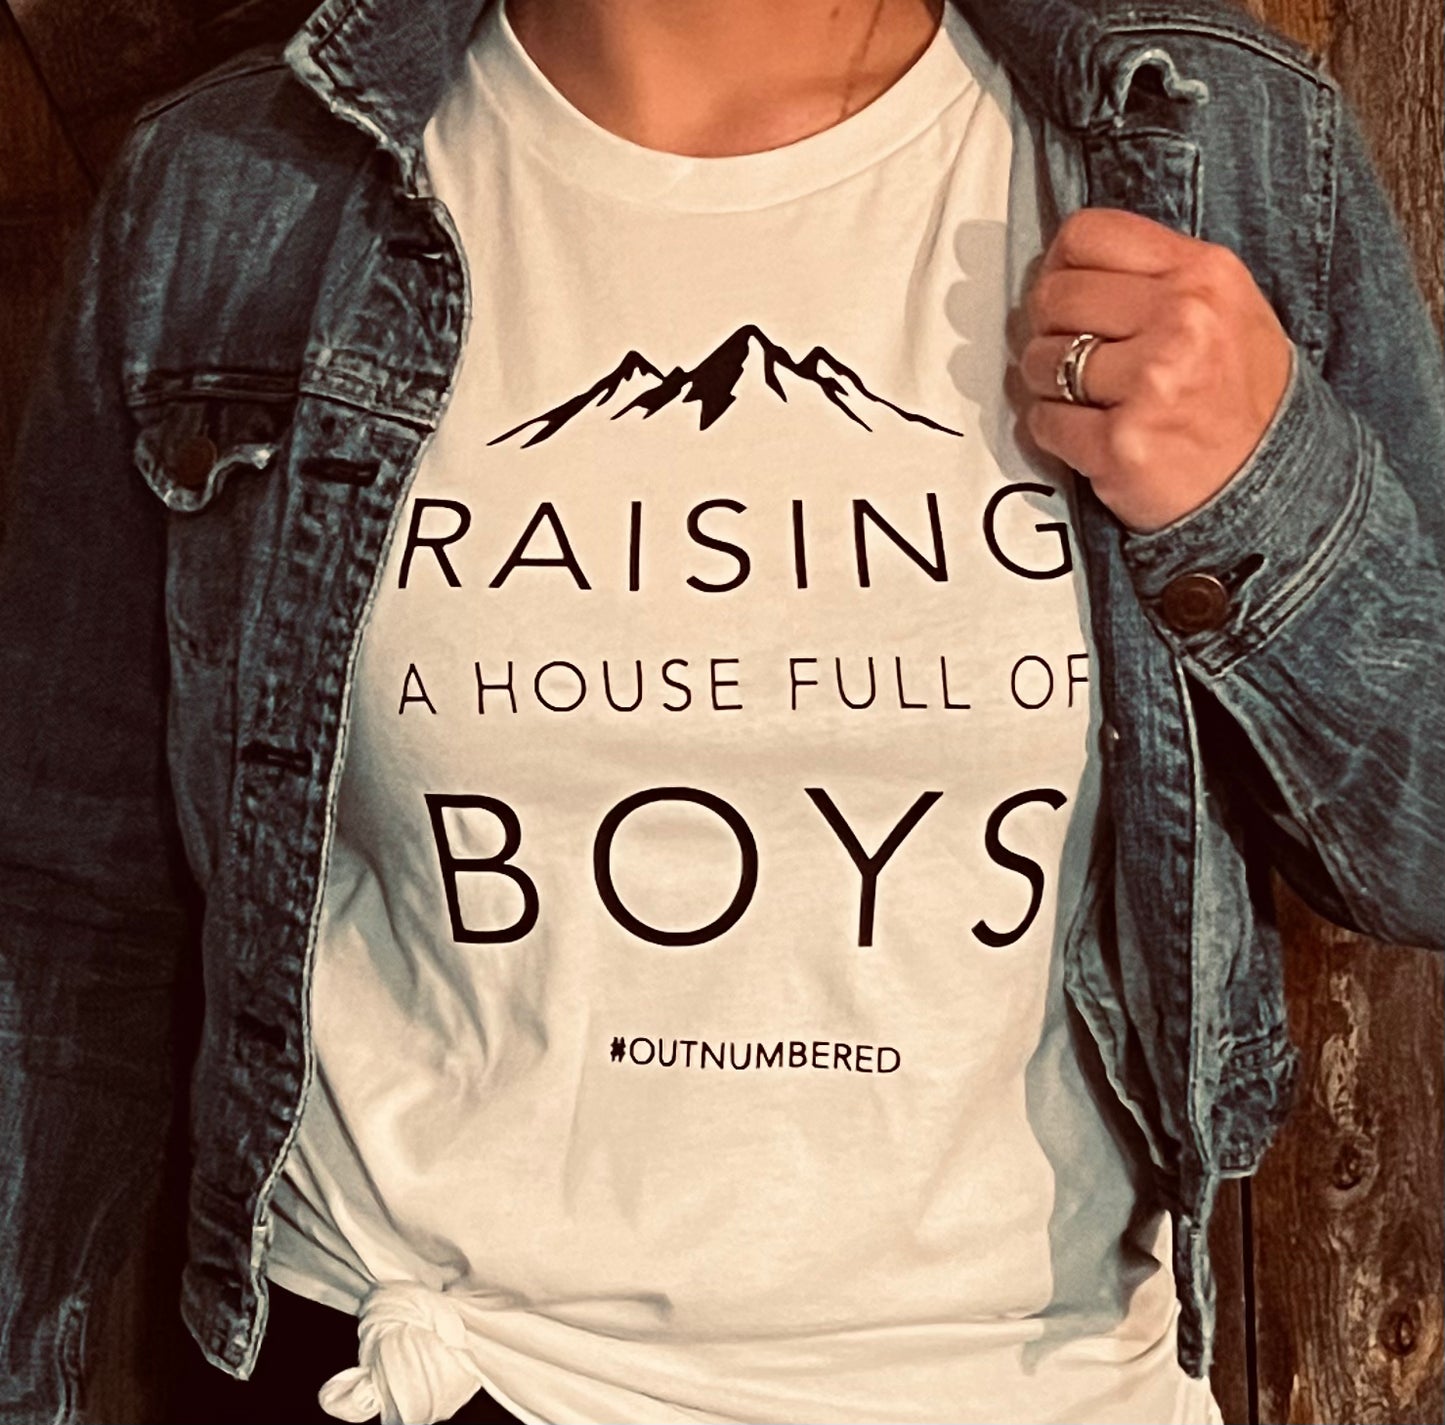 Raising Boys T-shirt